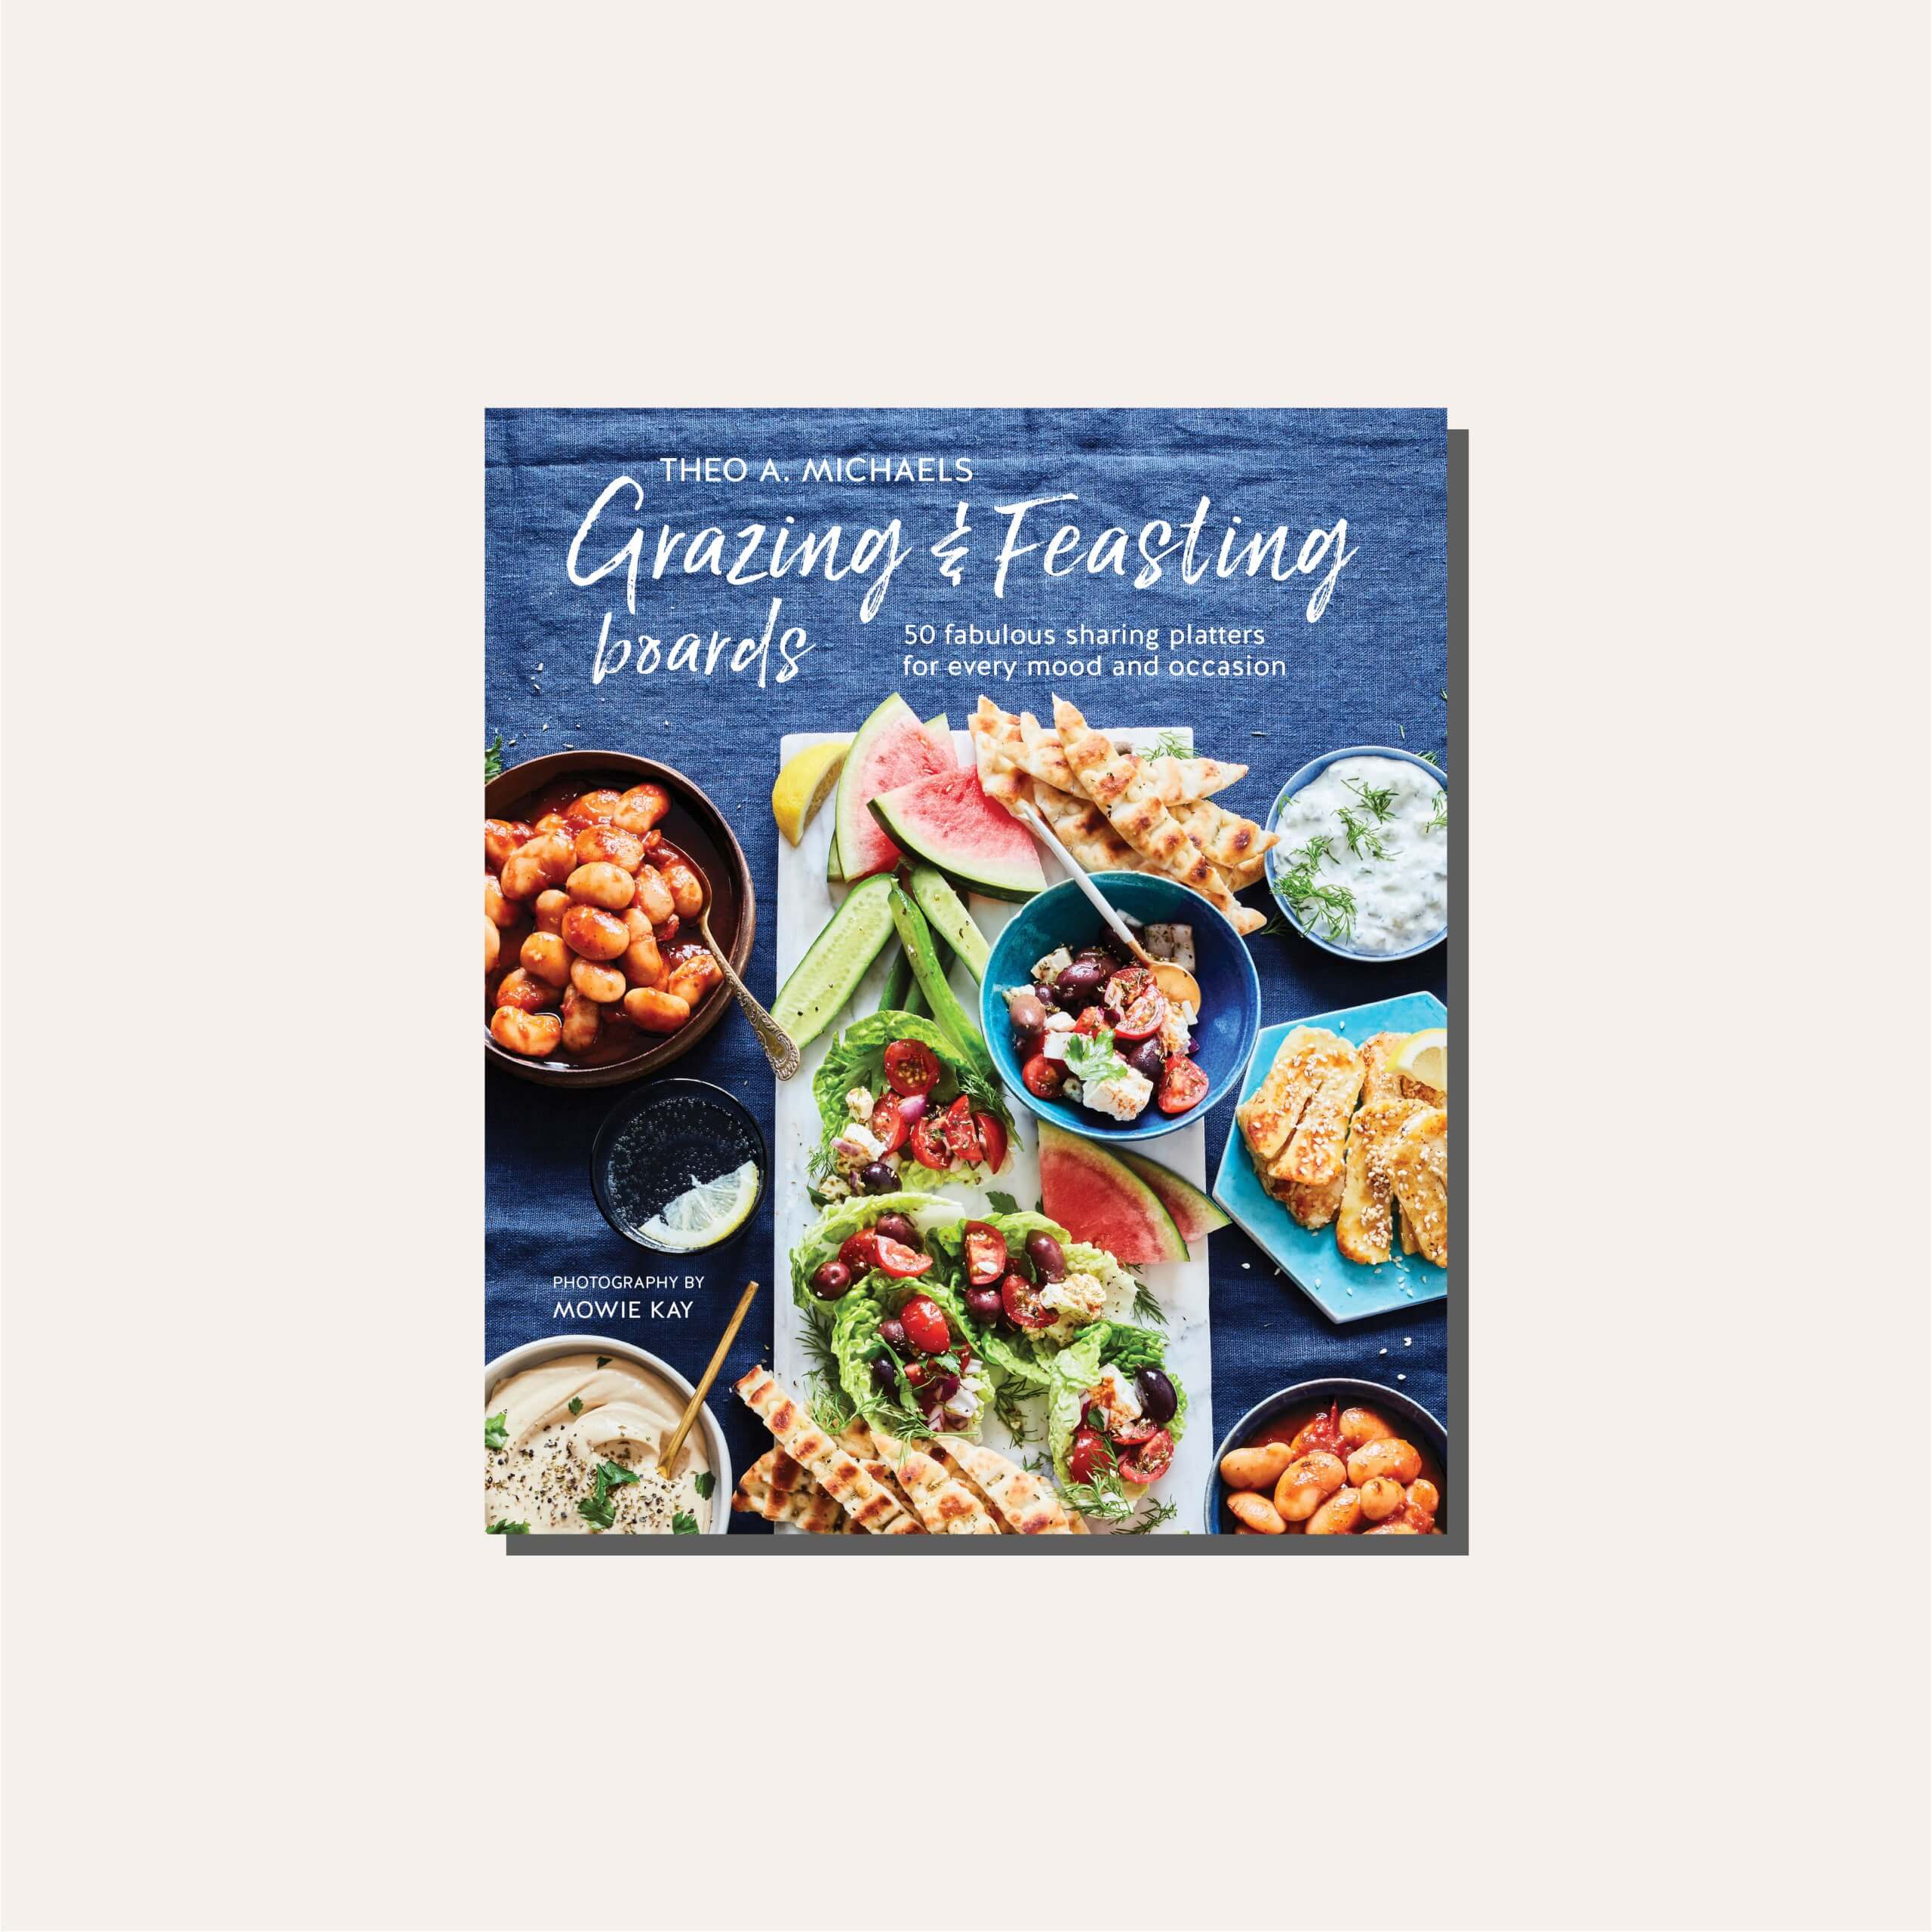 A dark blue cookbook cover in a light frame